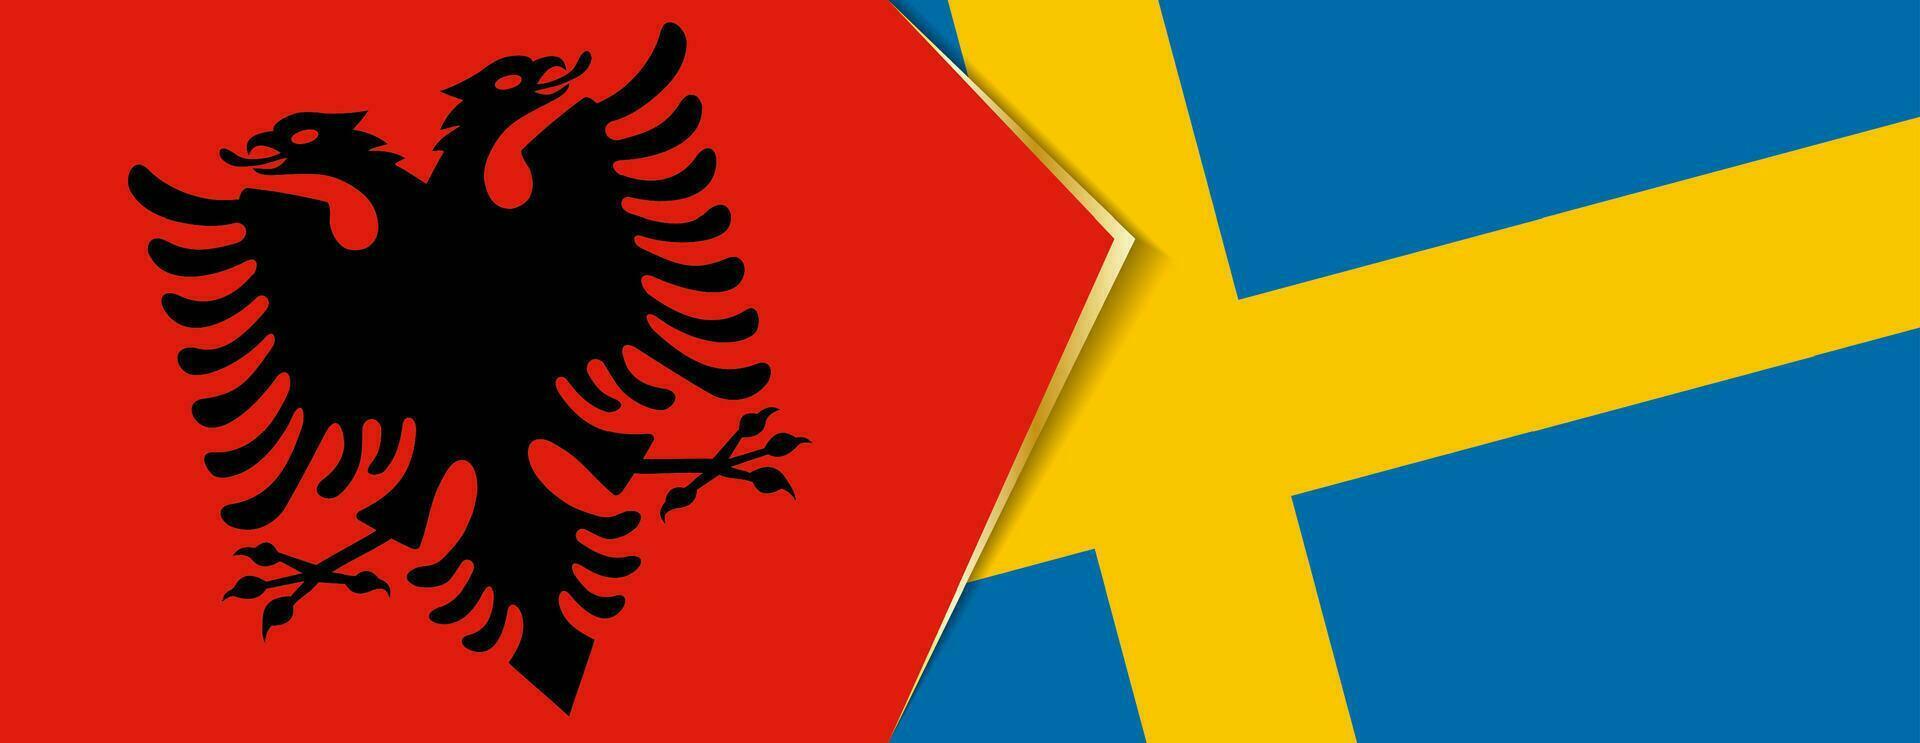 Albania e Svezia bandiere, Due vettore bandiere.